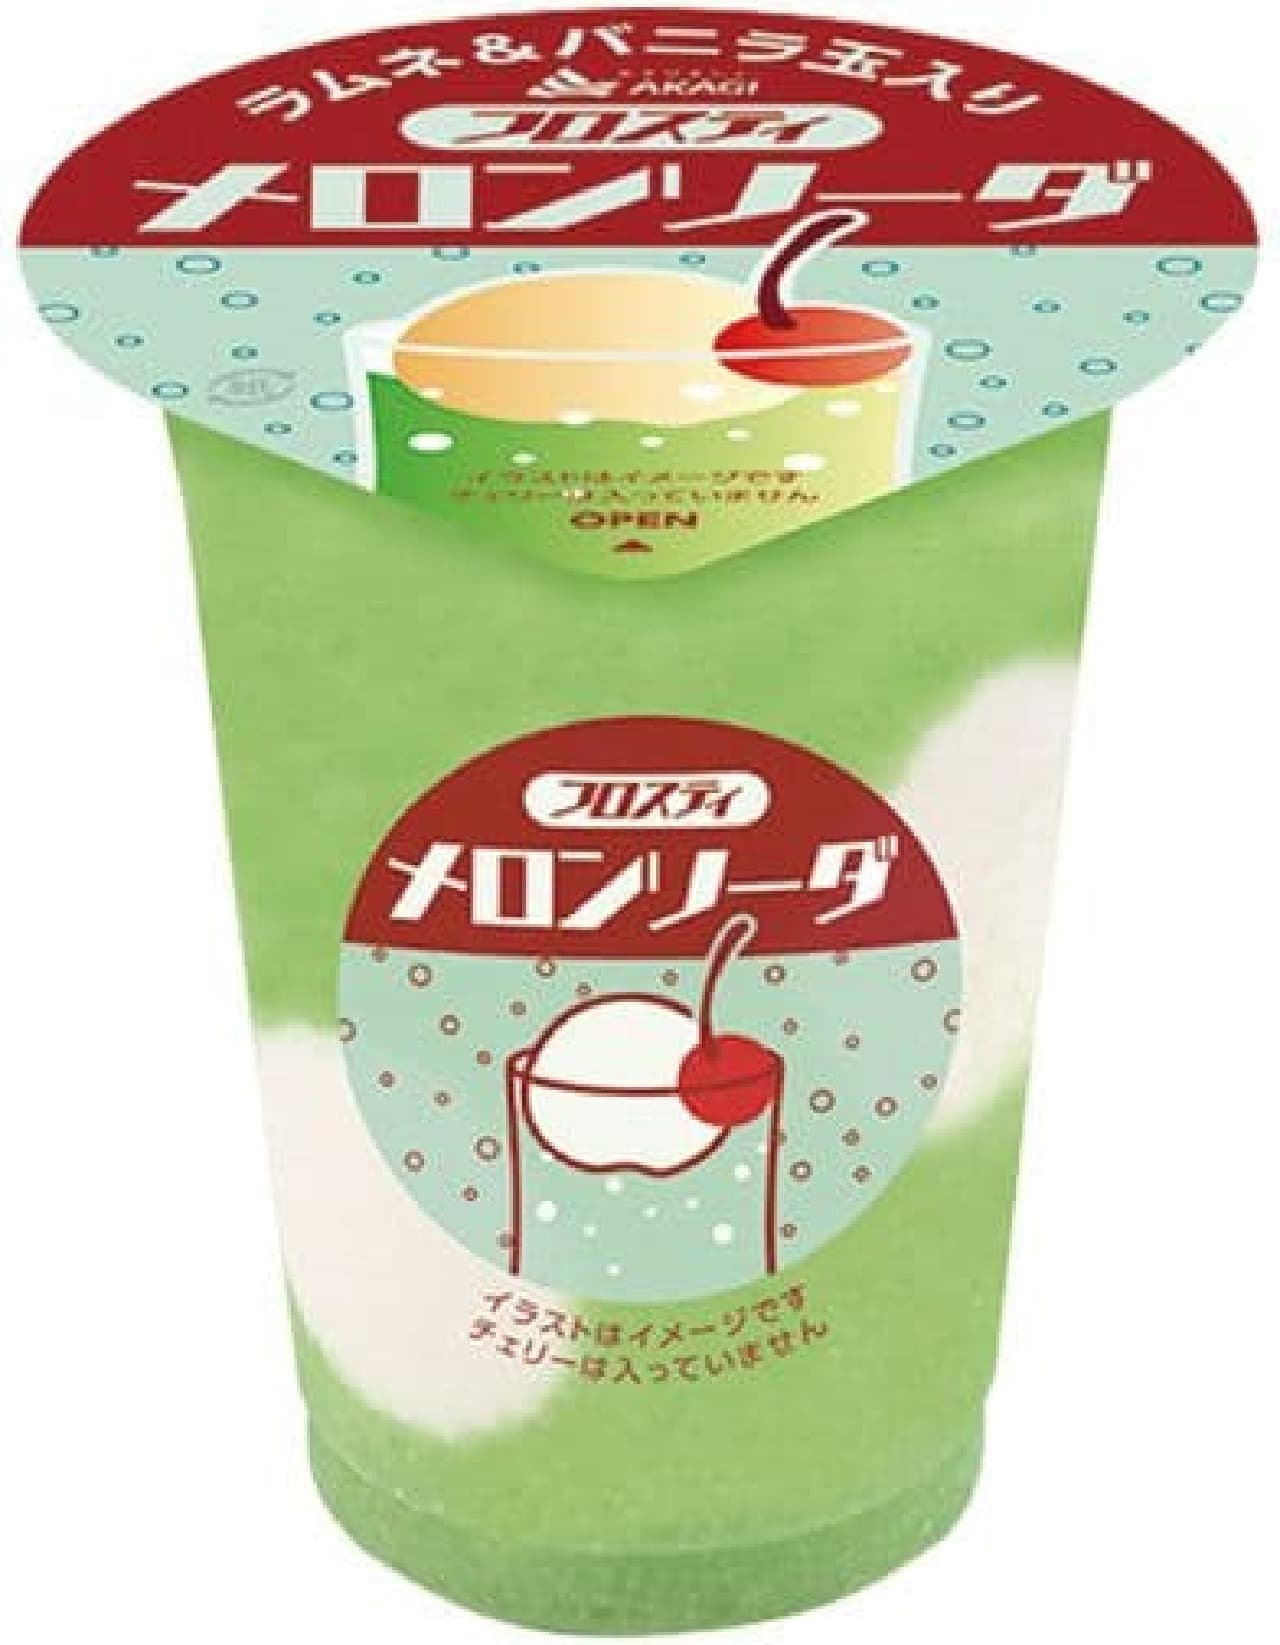 FamilyMart "Akagi Frosty Melon Soda